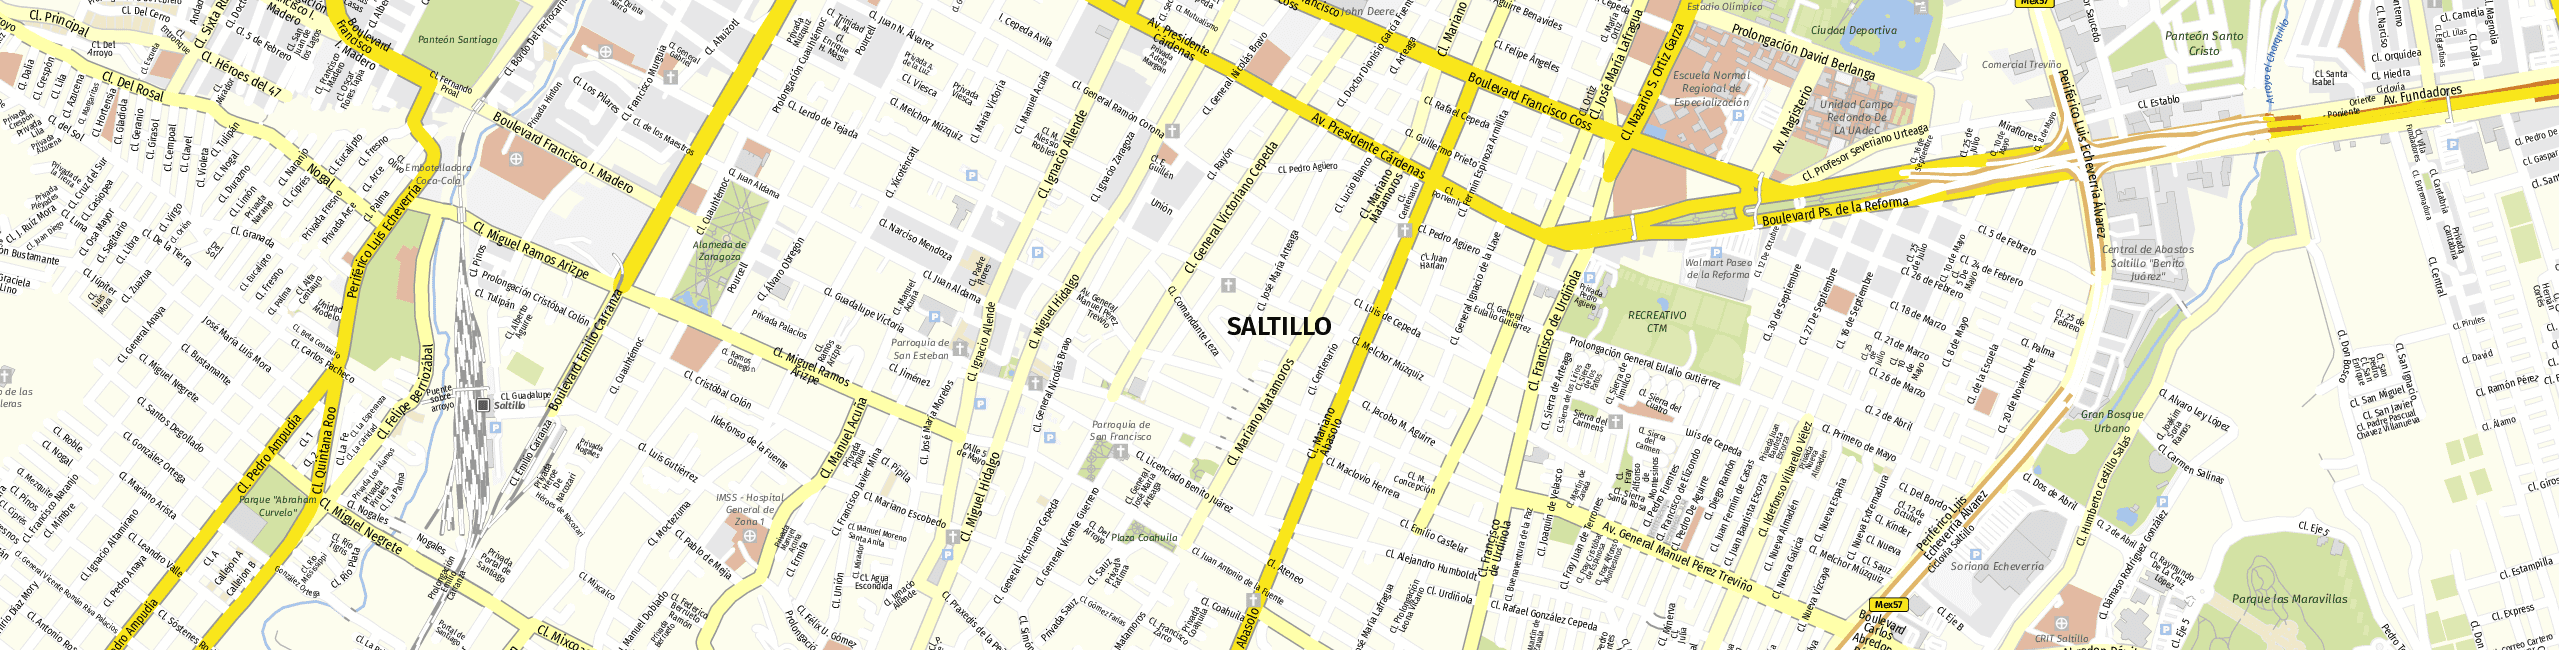 Stadtplan Saltillo zum Downloaden.